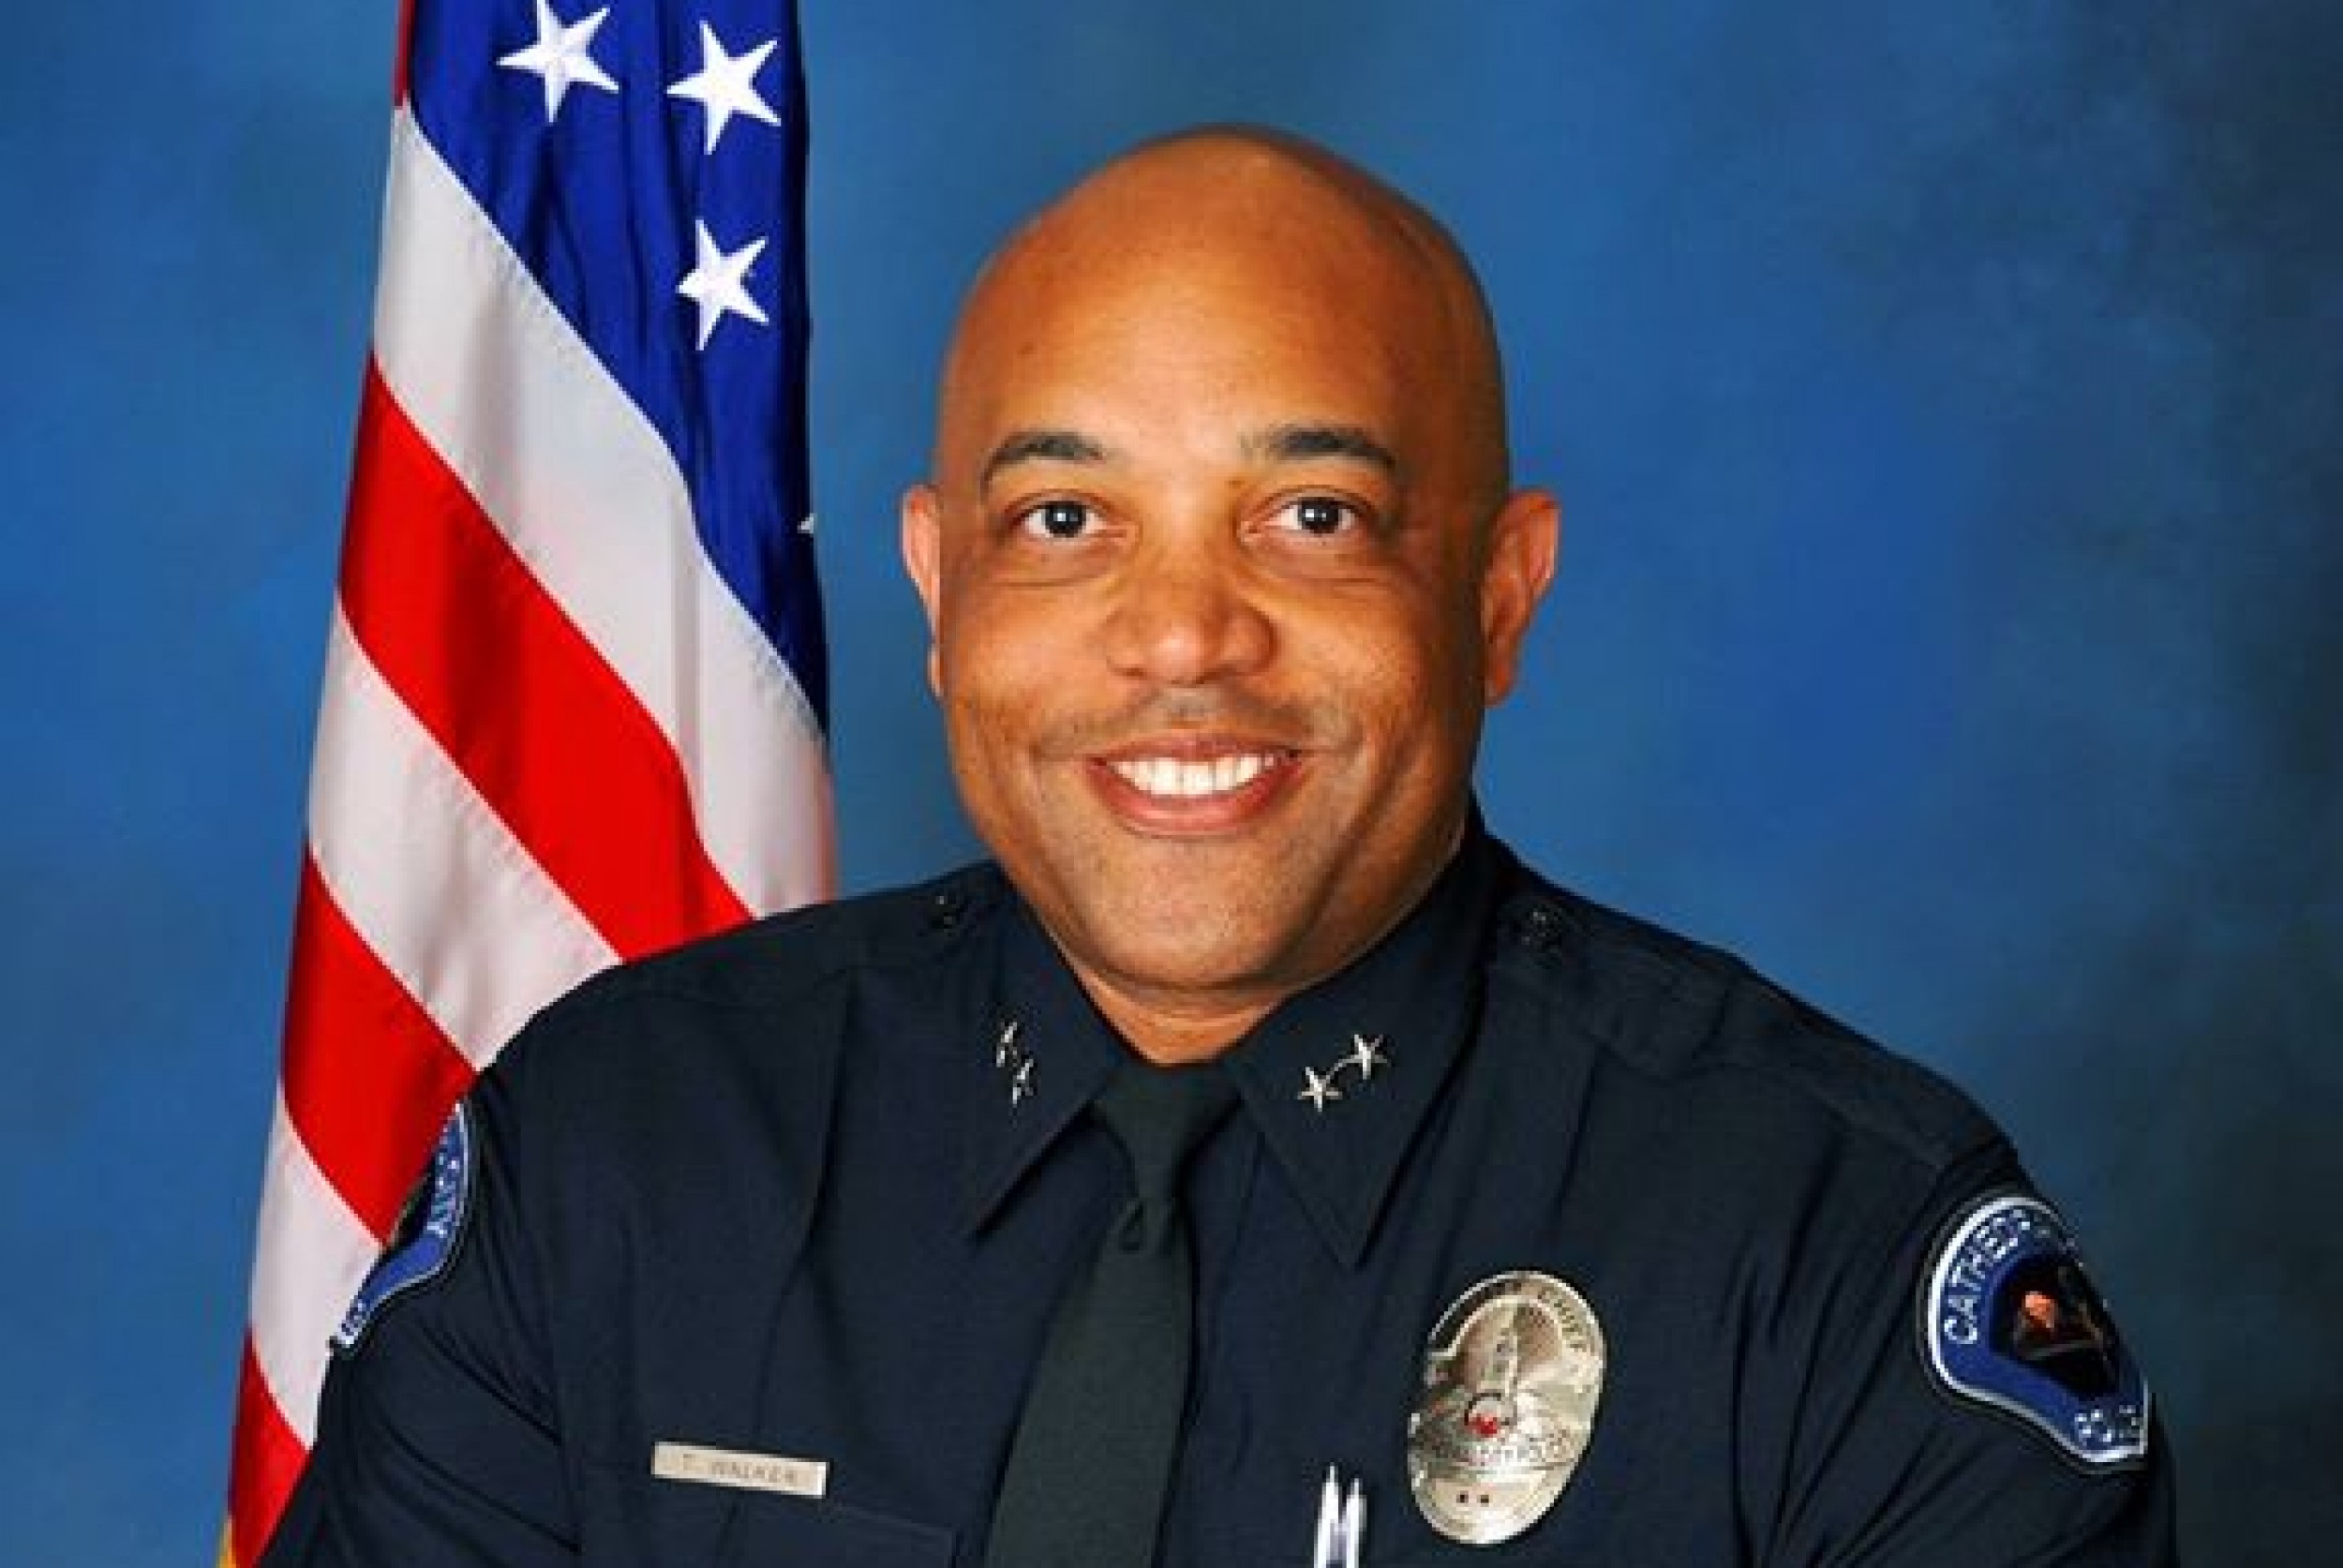 Deputy Chief Travis Walker